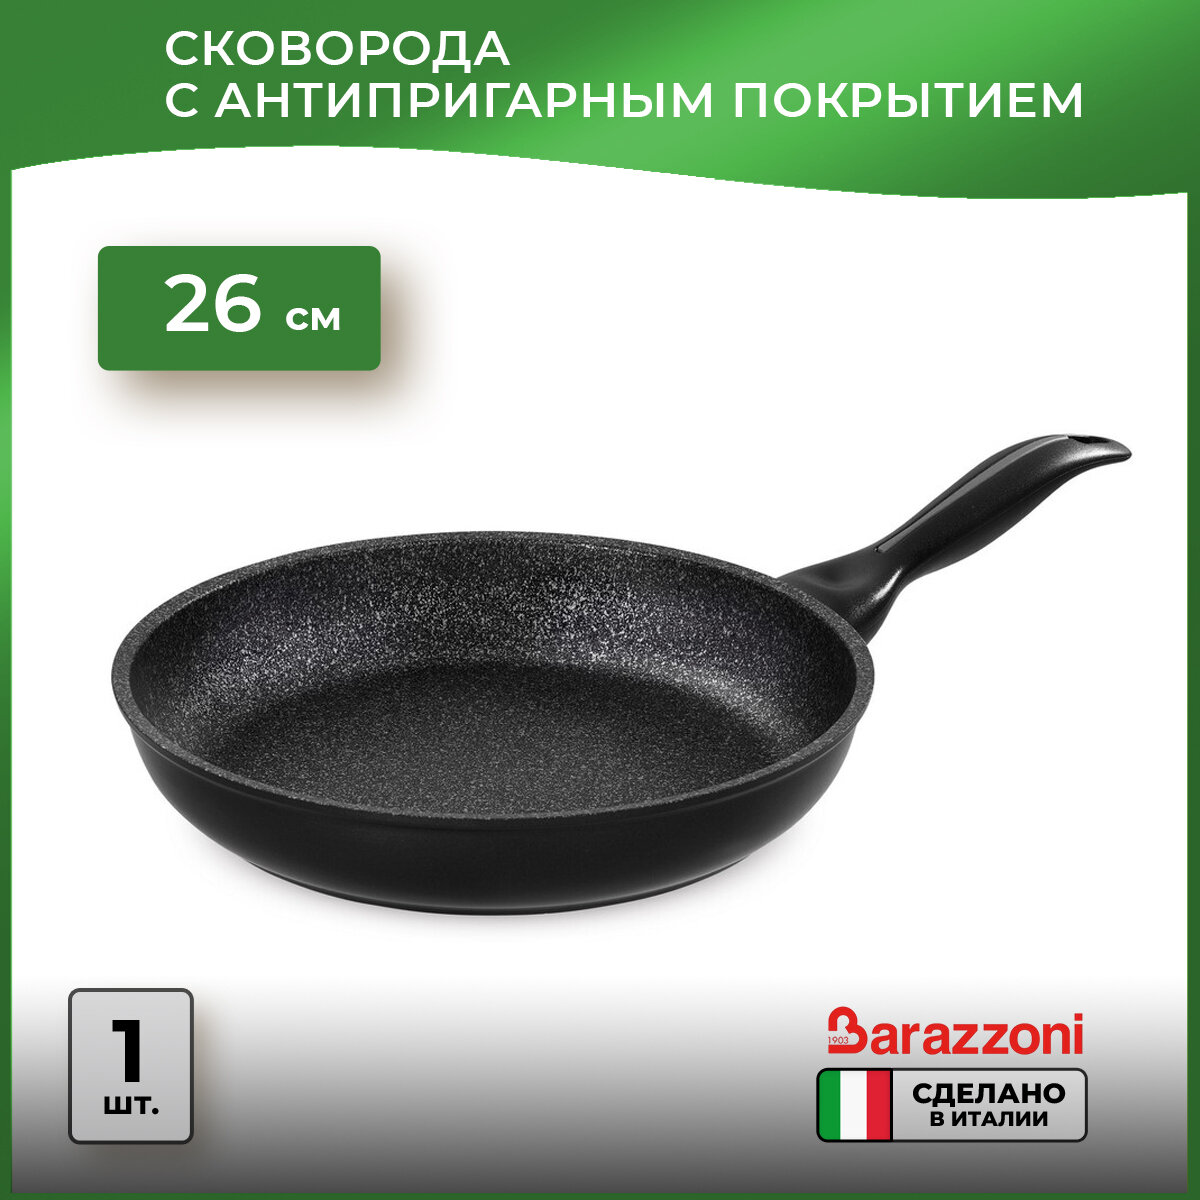 Сковорода Barazzoni Granitica Extra Induction, 26 см